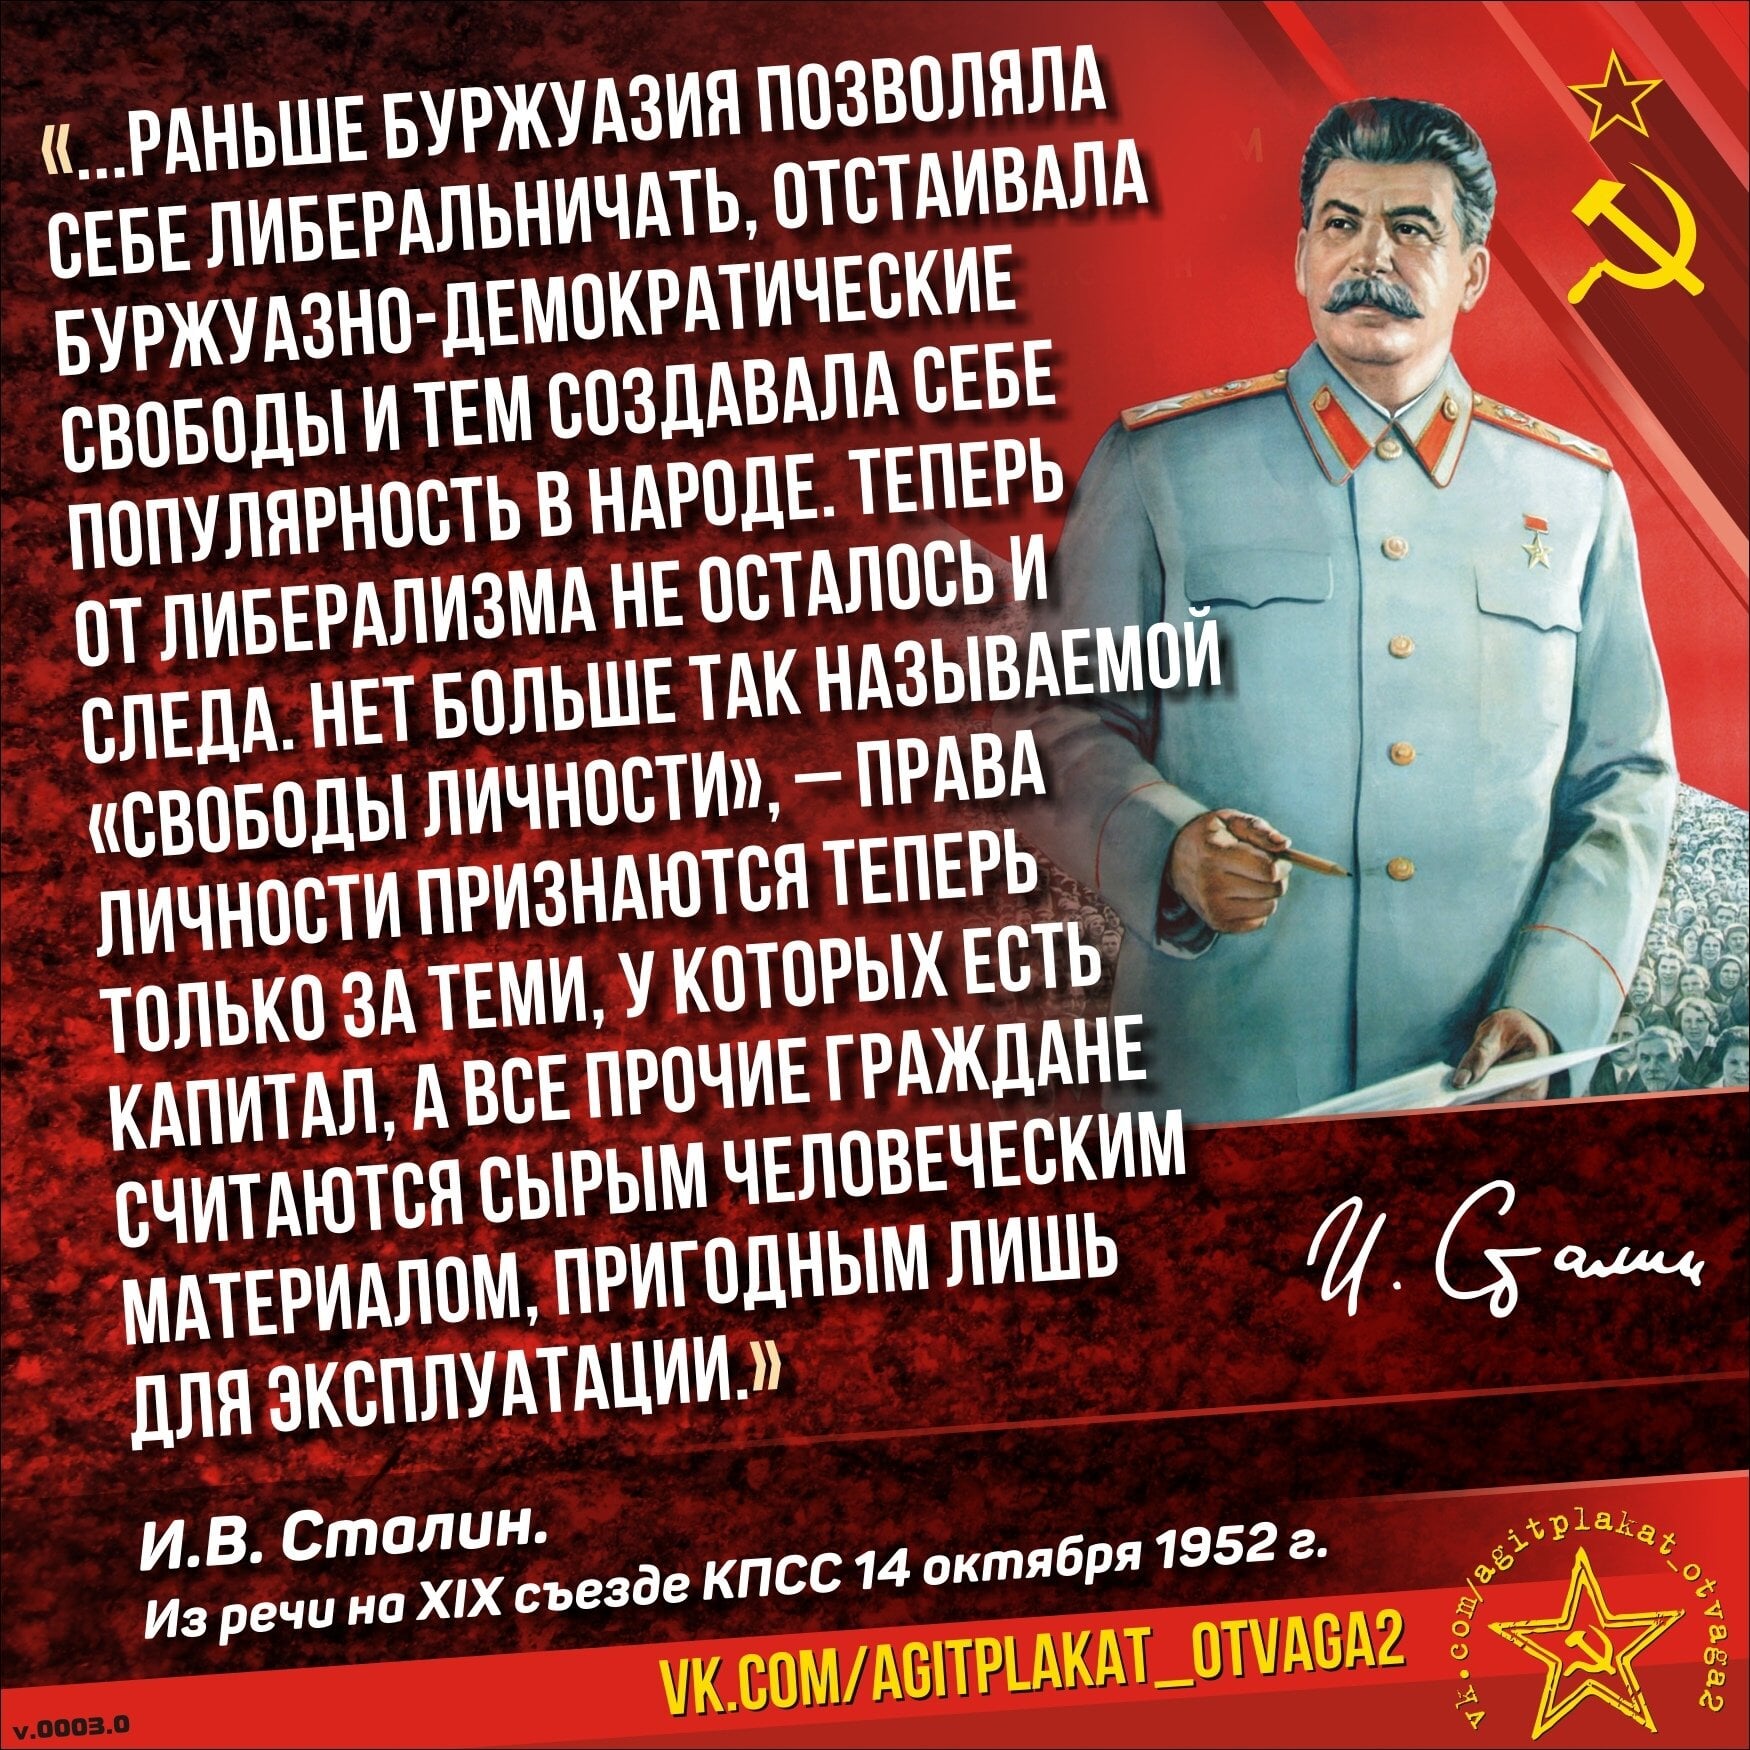 Читать про сталина. СССР Иосиф Сталин. Высказывания Сталина. Высказывания Сталина про буржуазию. Высказывания Сталина о капитализме.